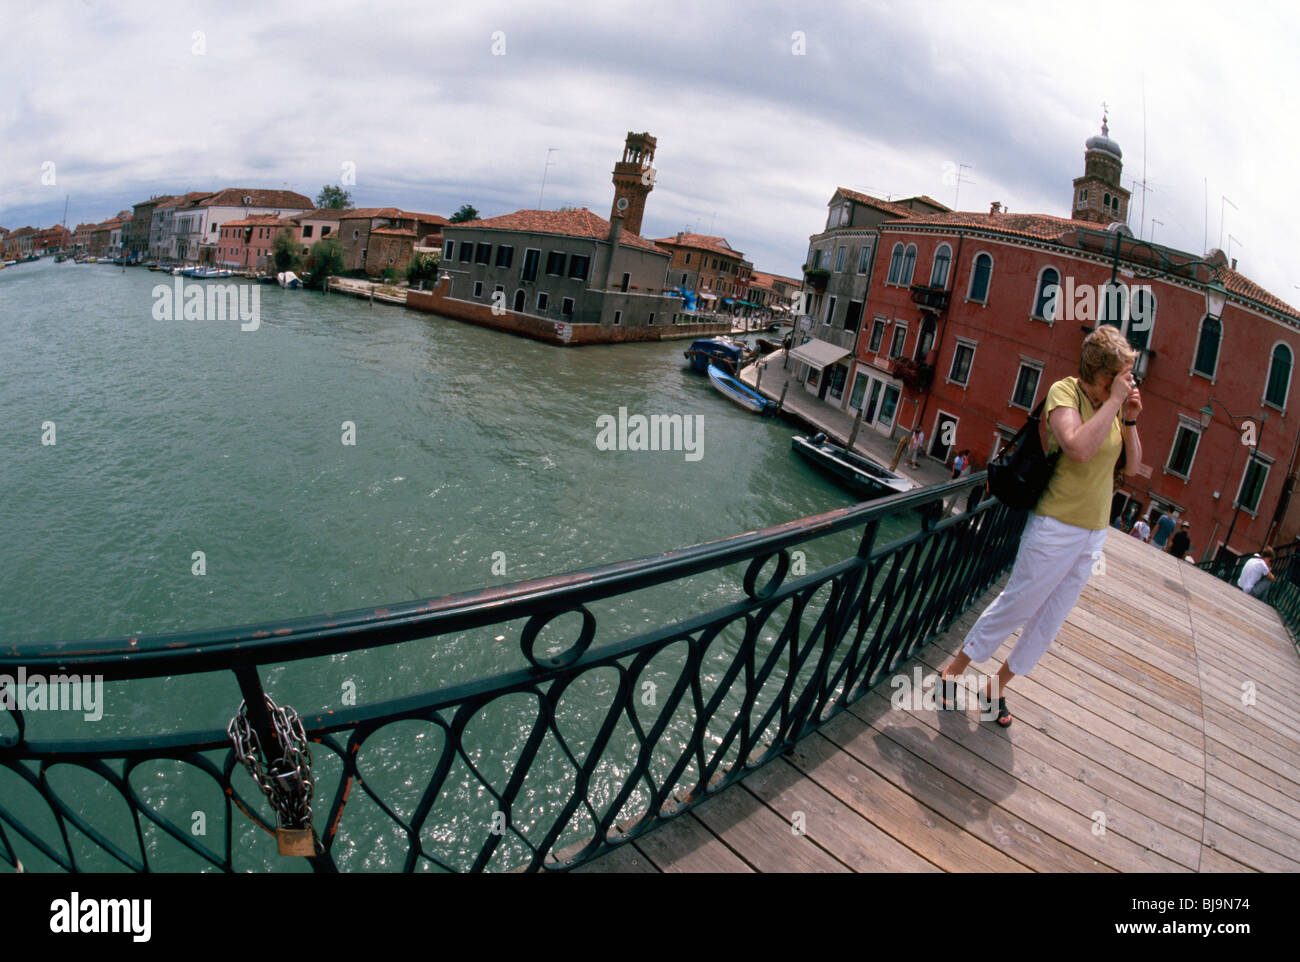 Insel Murano, Juli 2008 - Tourist nimmt ein Bild auf Ponte (Brücke) Vivarini Bartolomeo auf der Insel Murano. Vorhängeschloss auf f Stockfoto